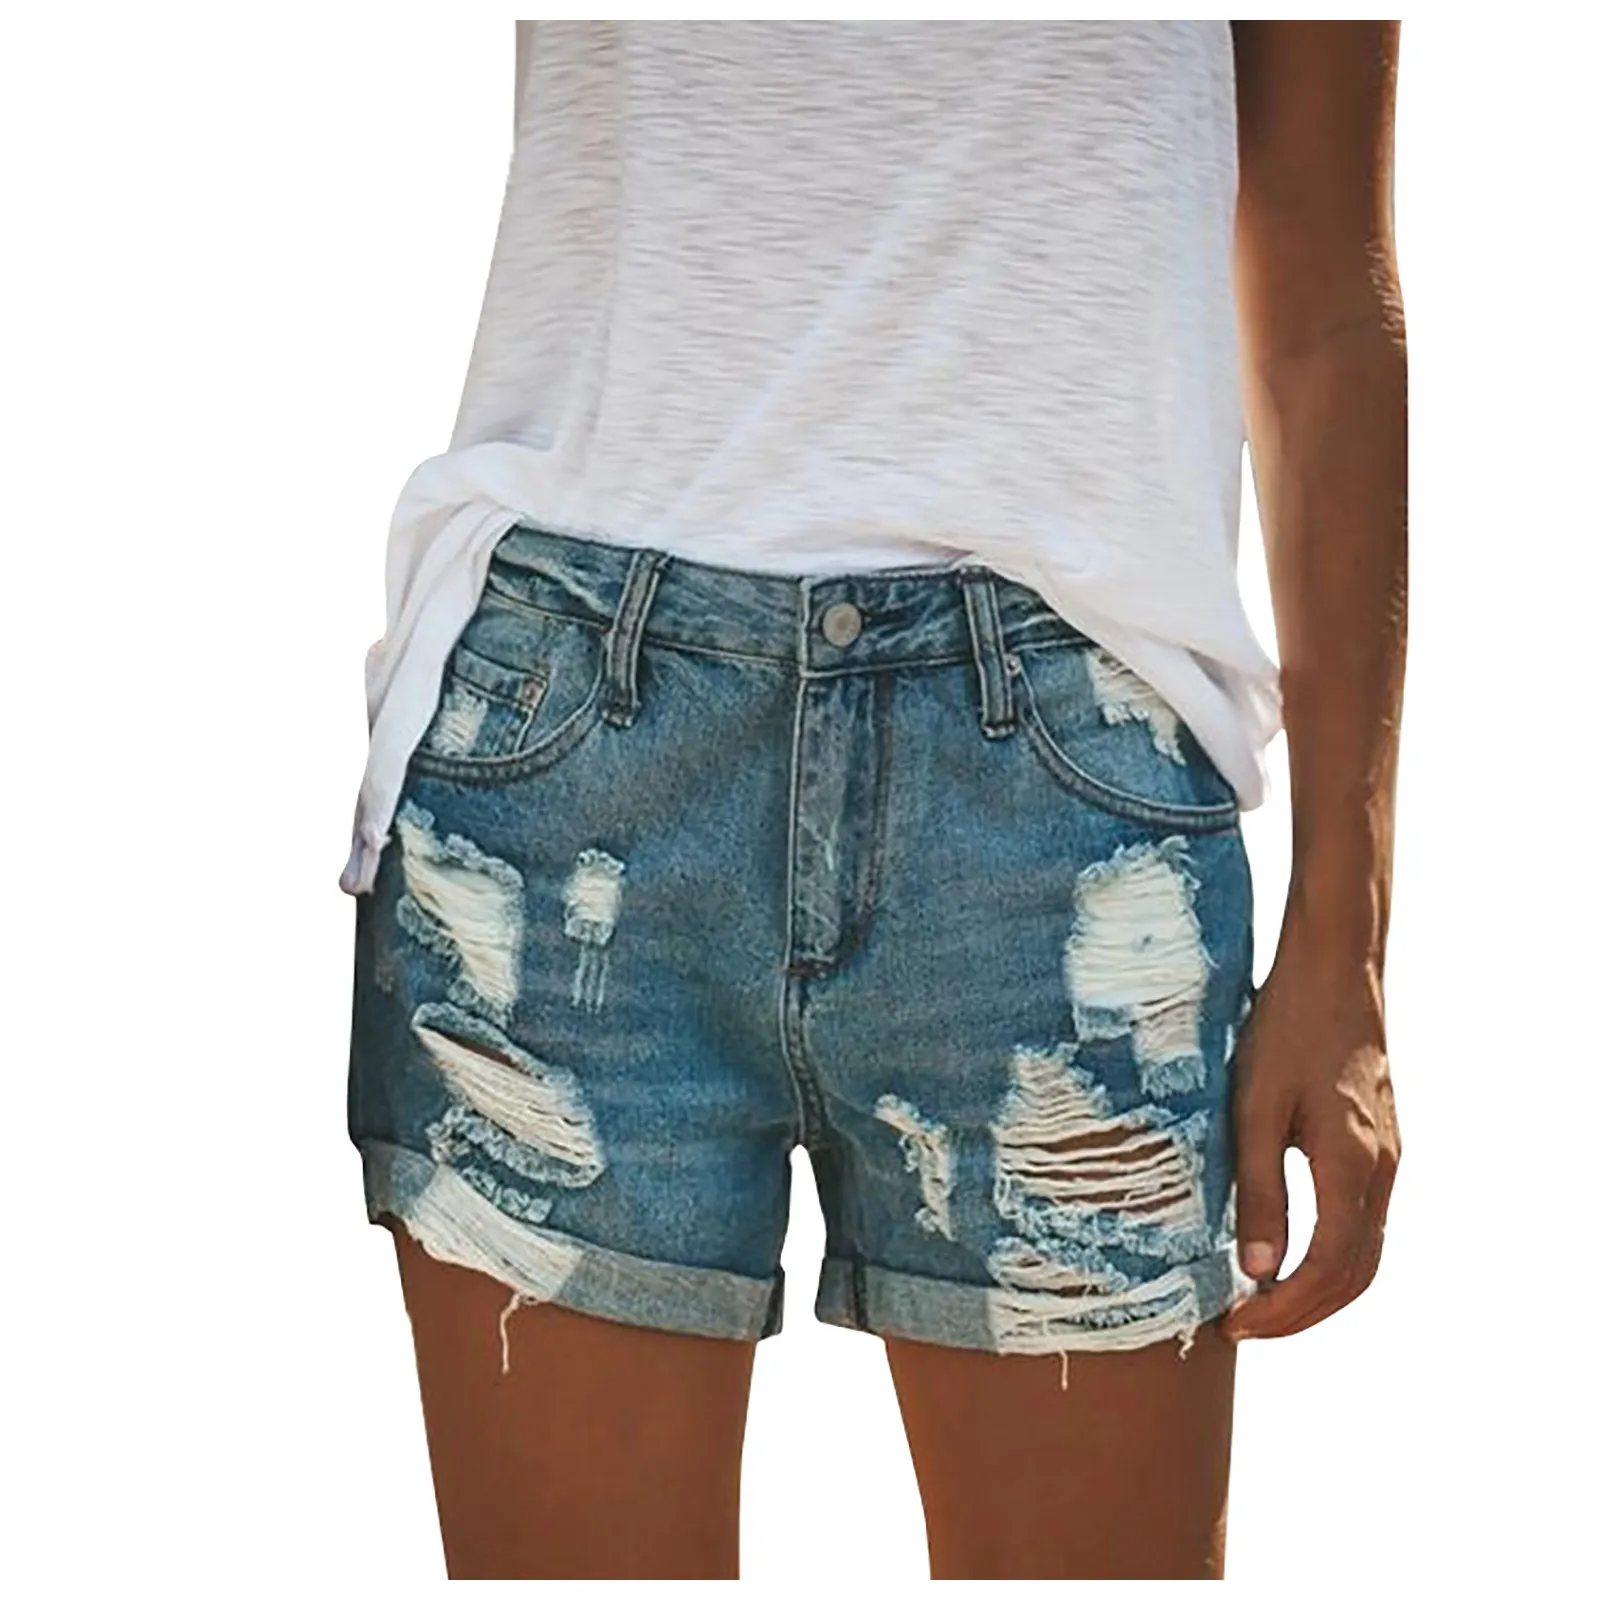 

Летние модные женские повседневные джинсовые шорты с потертостями на подоле, рваные джинсы, популярные шорты, повседневные потертые джинсо...